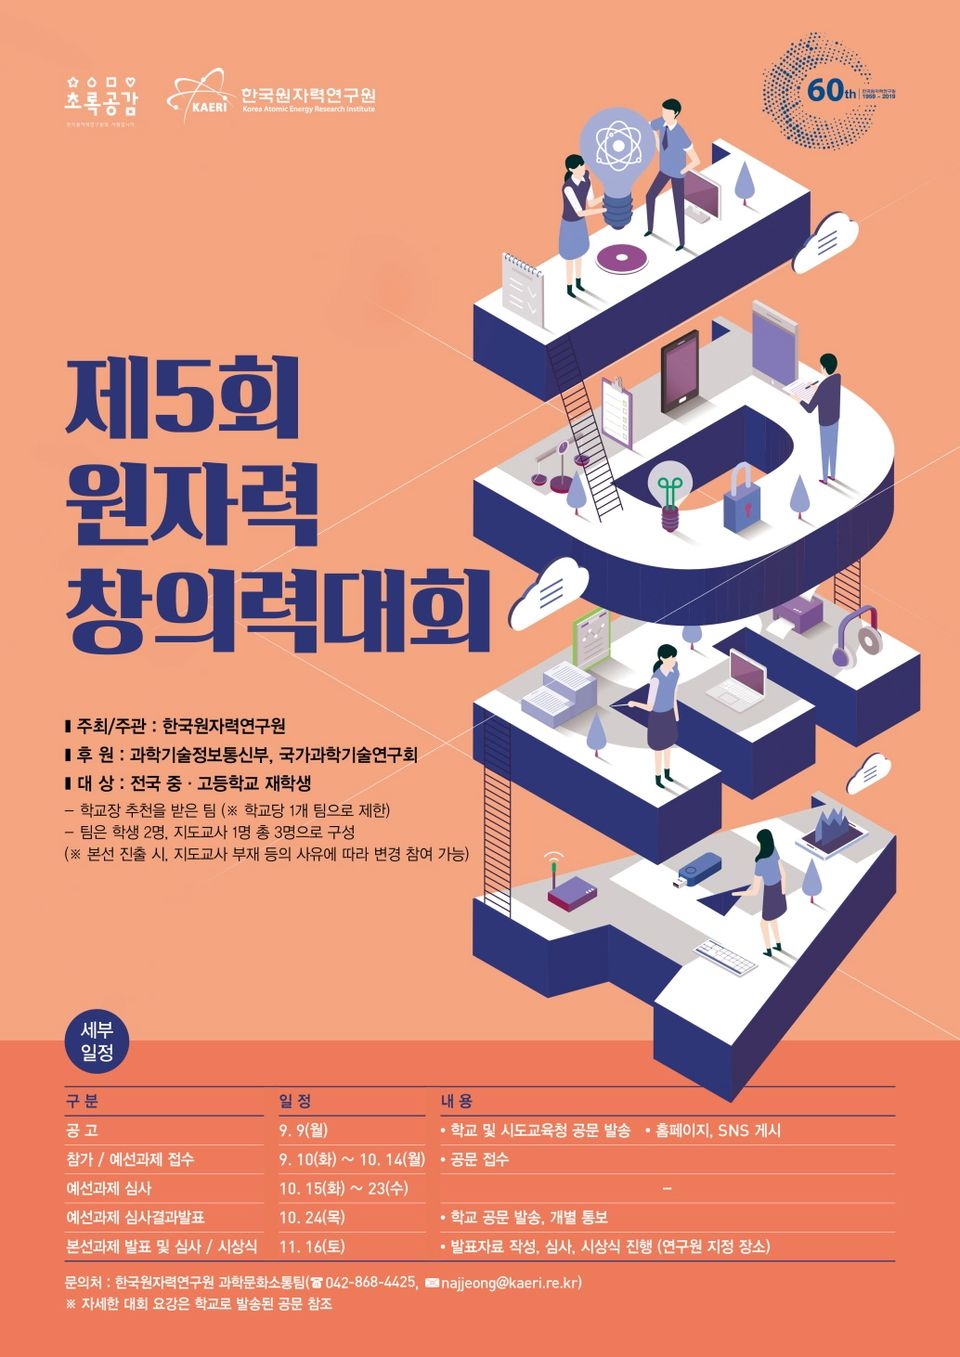 한국원자력연구원은 원자력에 관심 있는 전국 중·고등학생을 대상으로 ‘제5회 원자력 창의력 대회’를 개최한다.